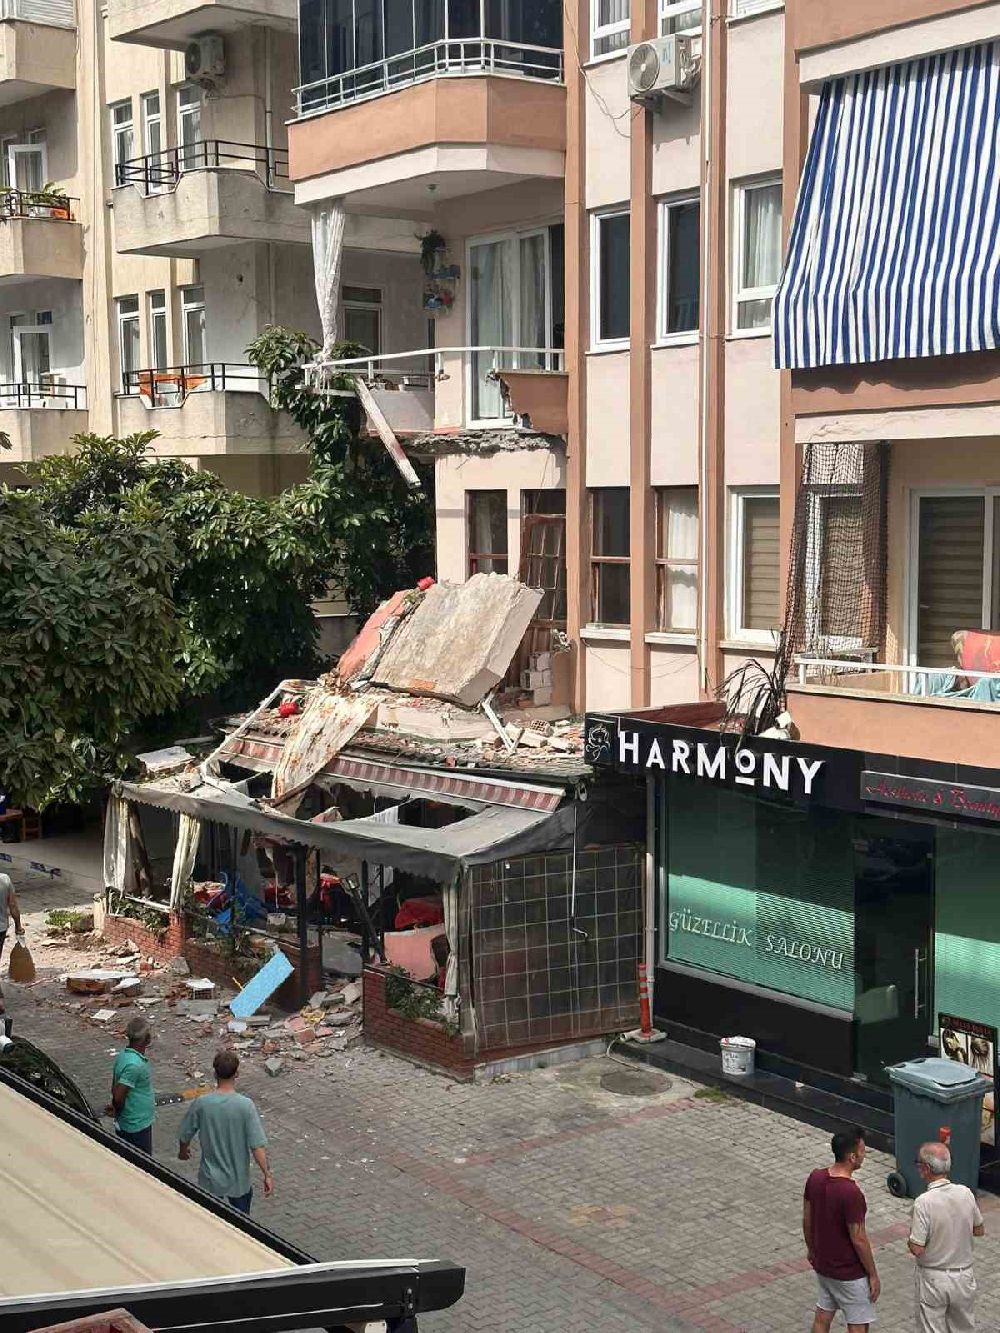 Antalya'da faciaya ramak kala binanın balkonu çöktü